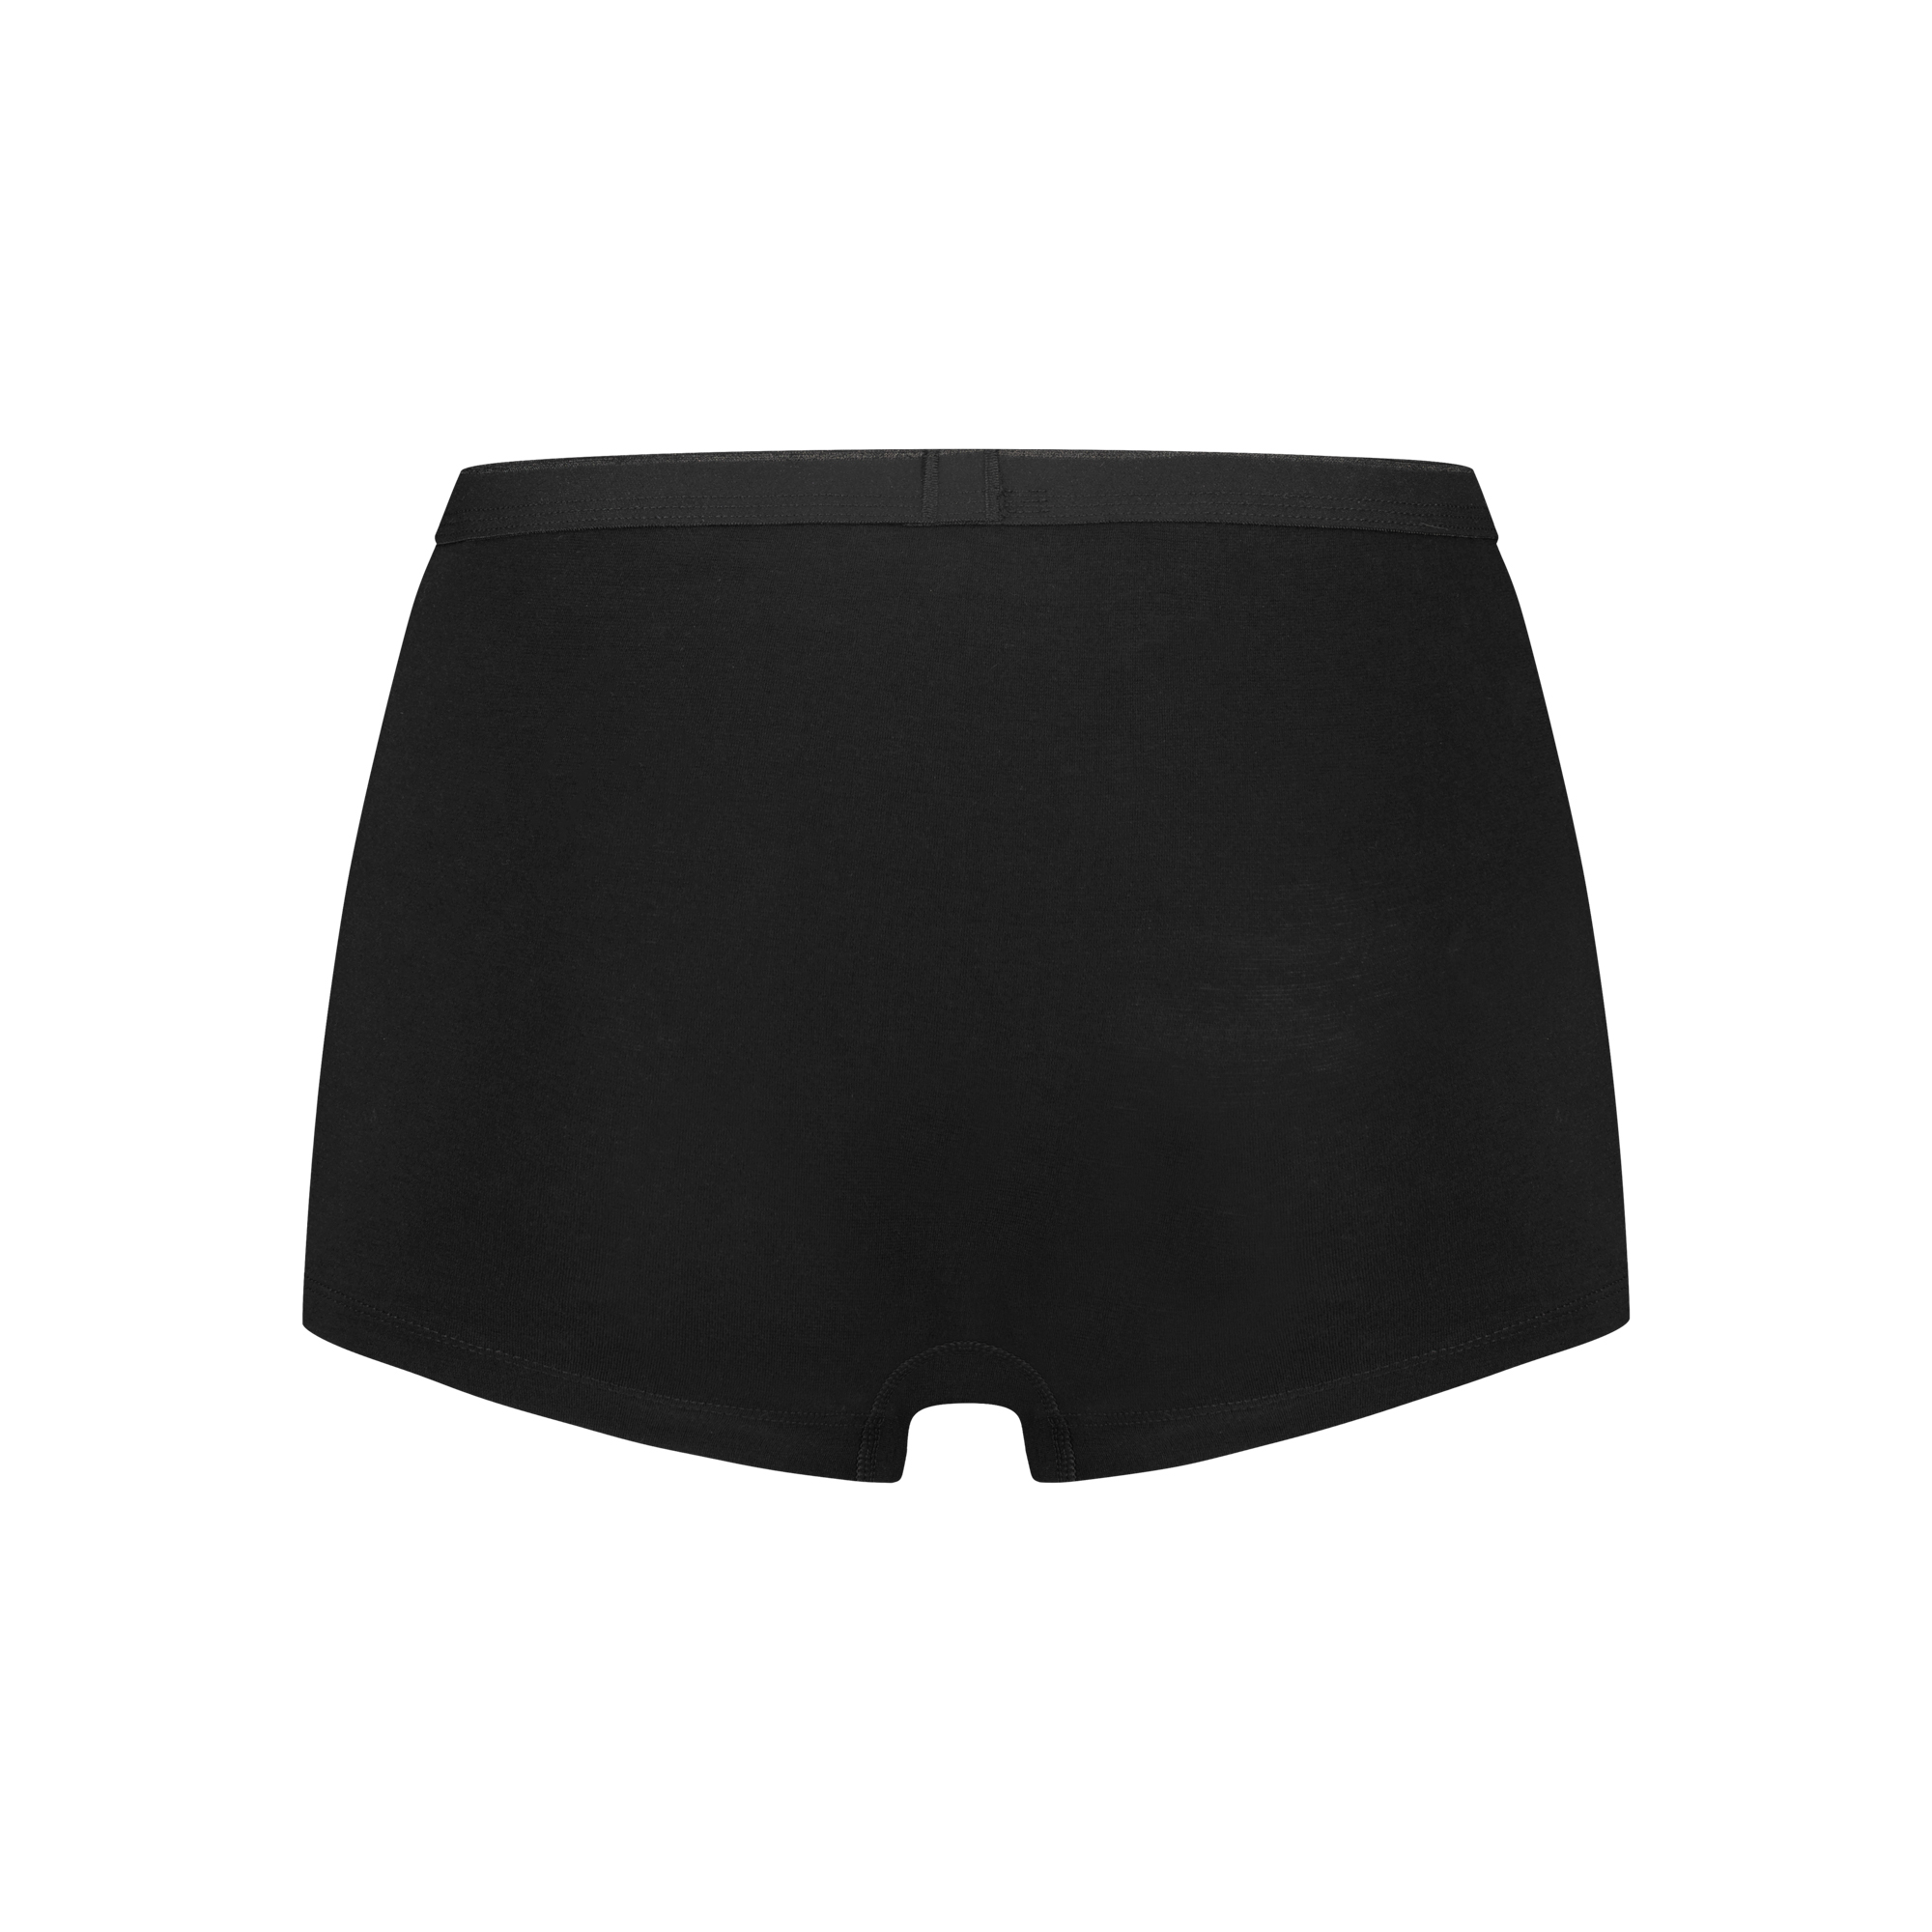 shorts zwart 2 pack